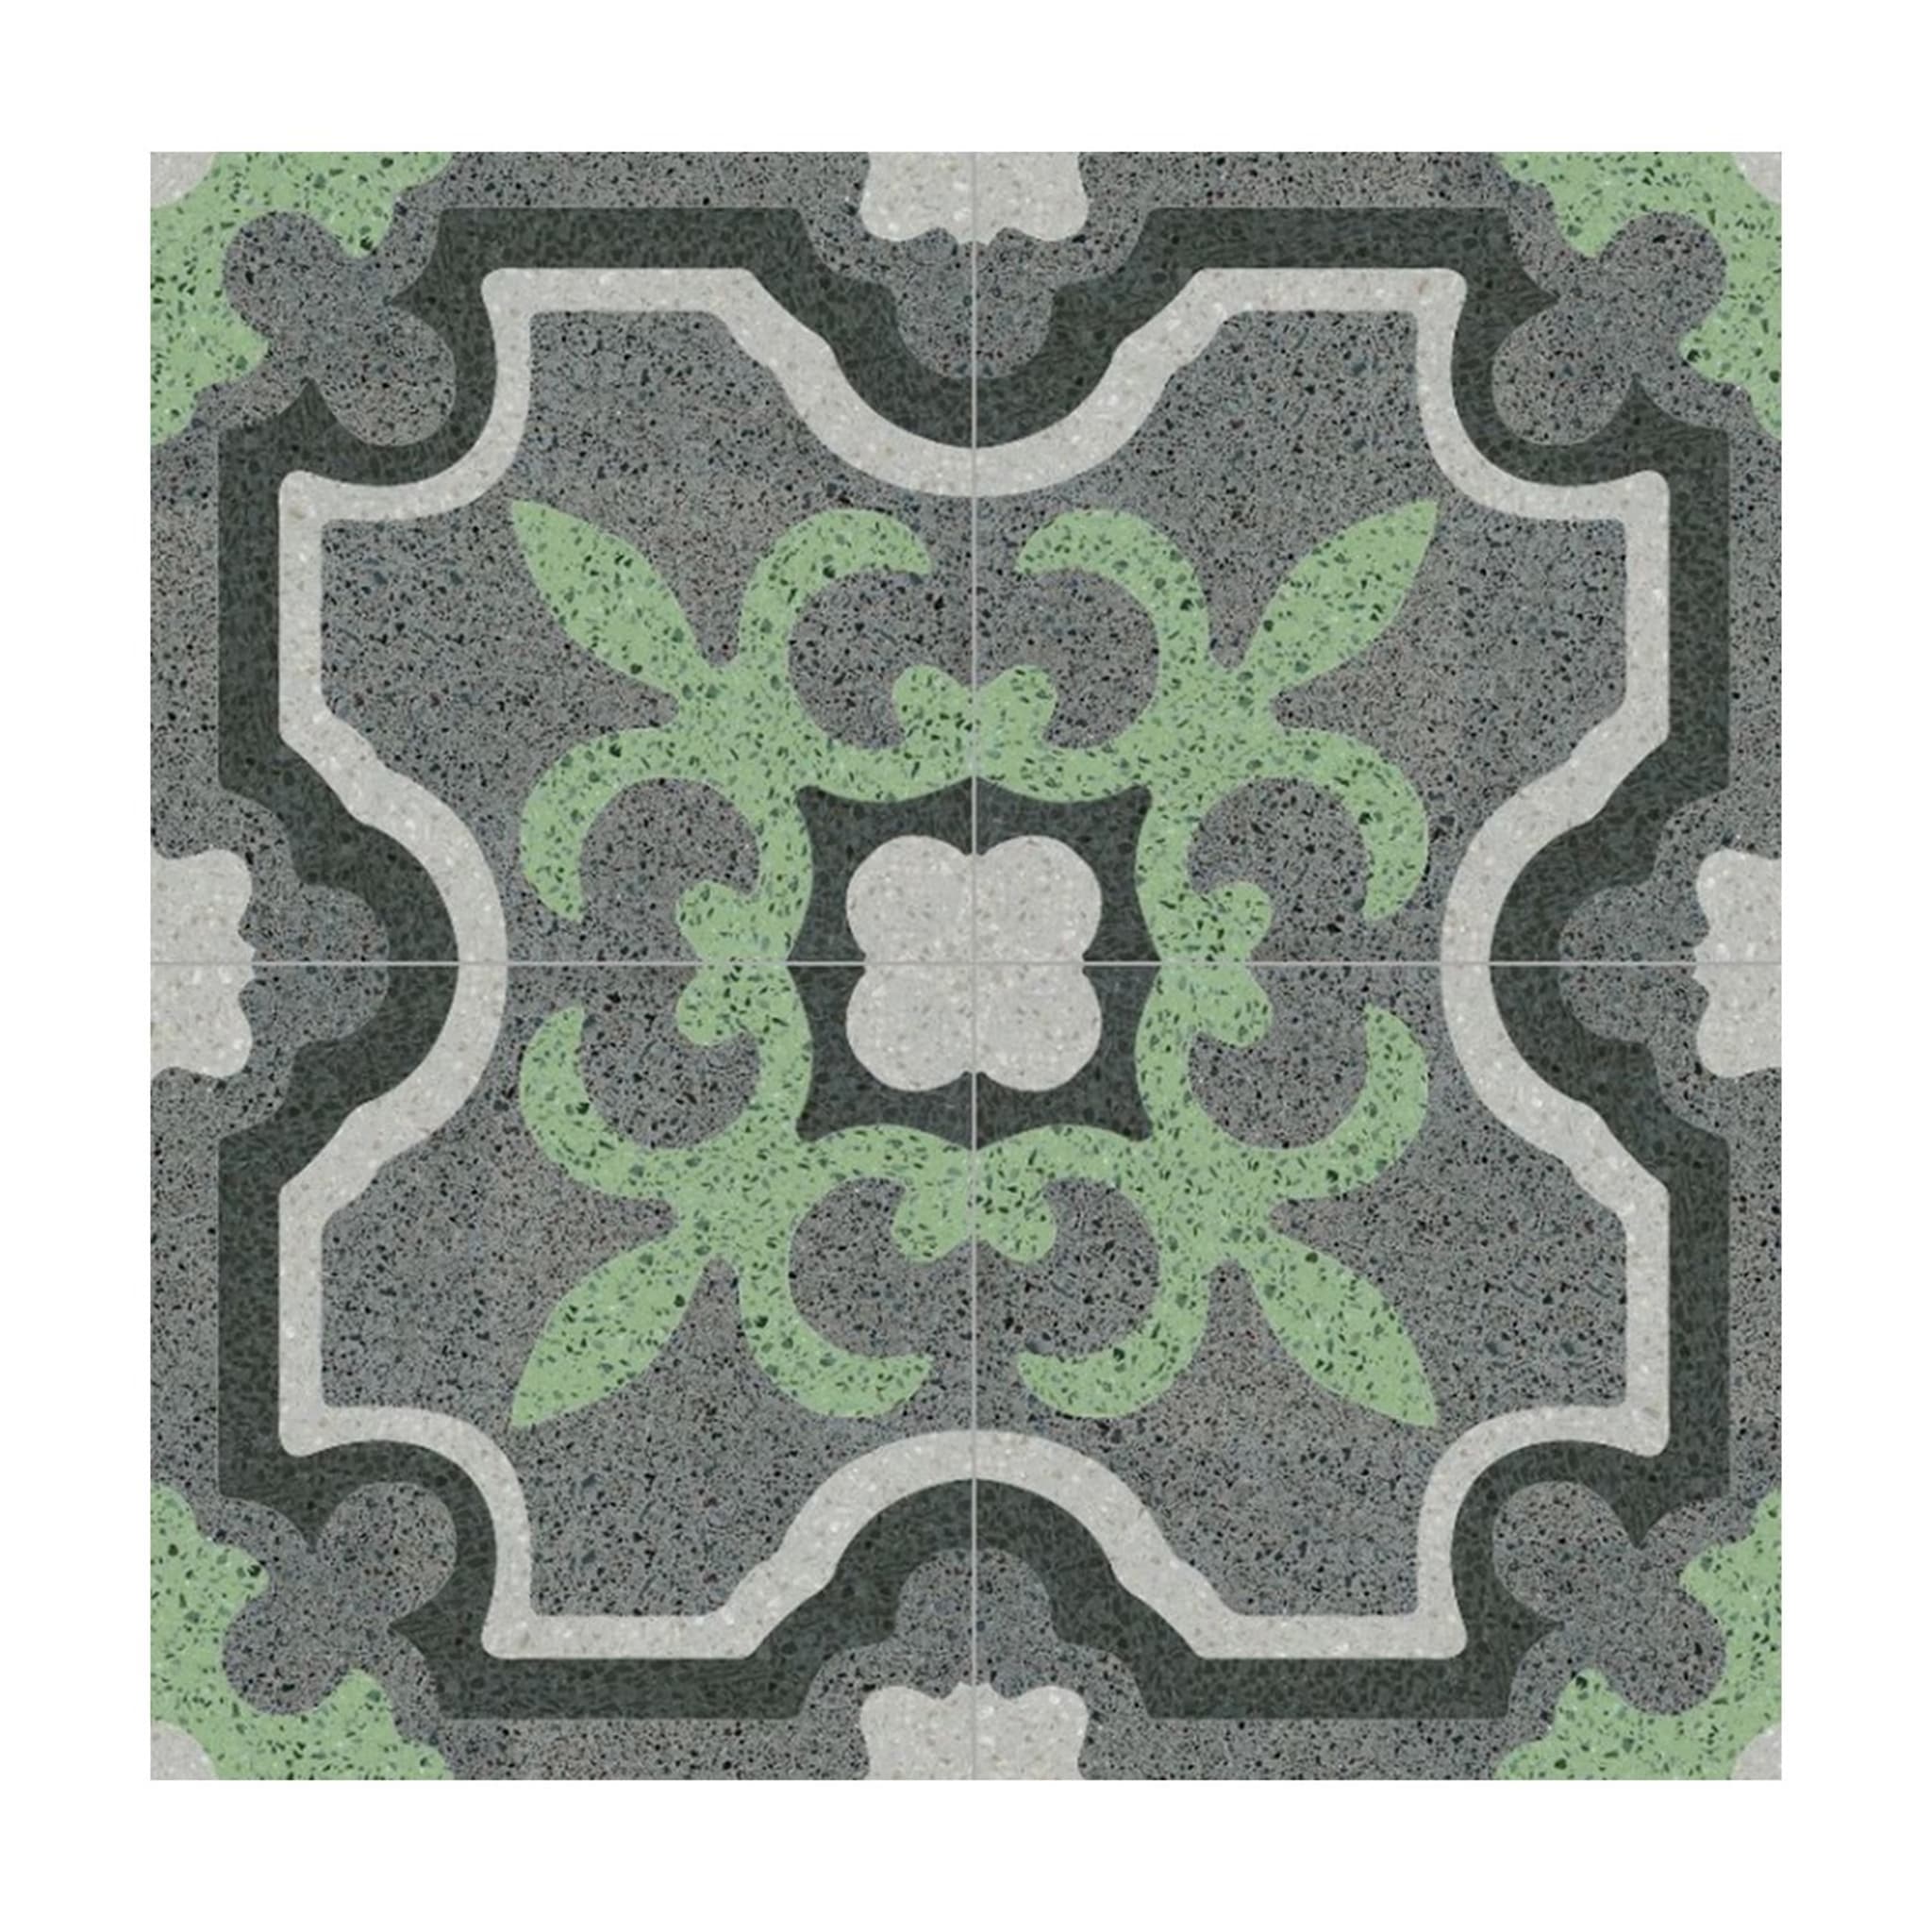 Versus Set of 25 Terrazzo Tiles - Main view